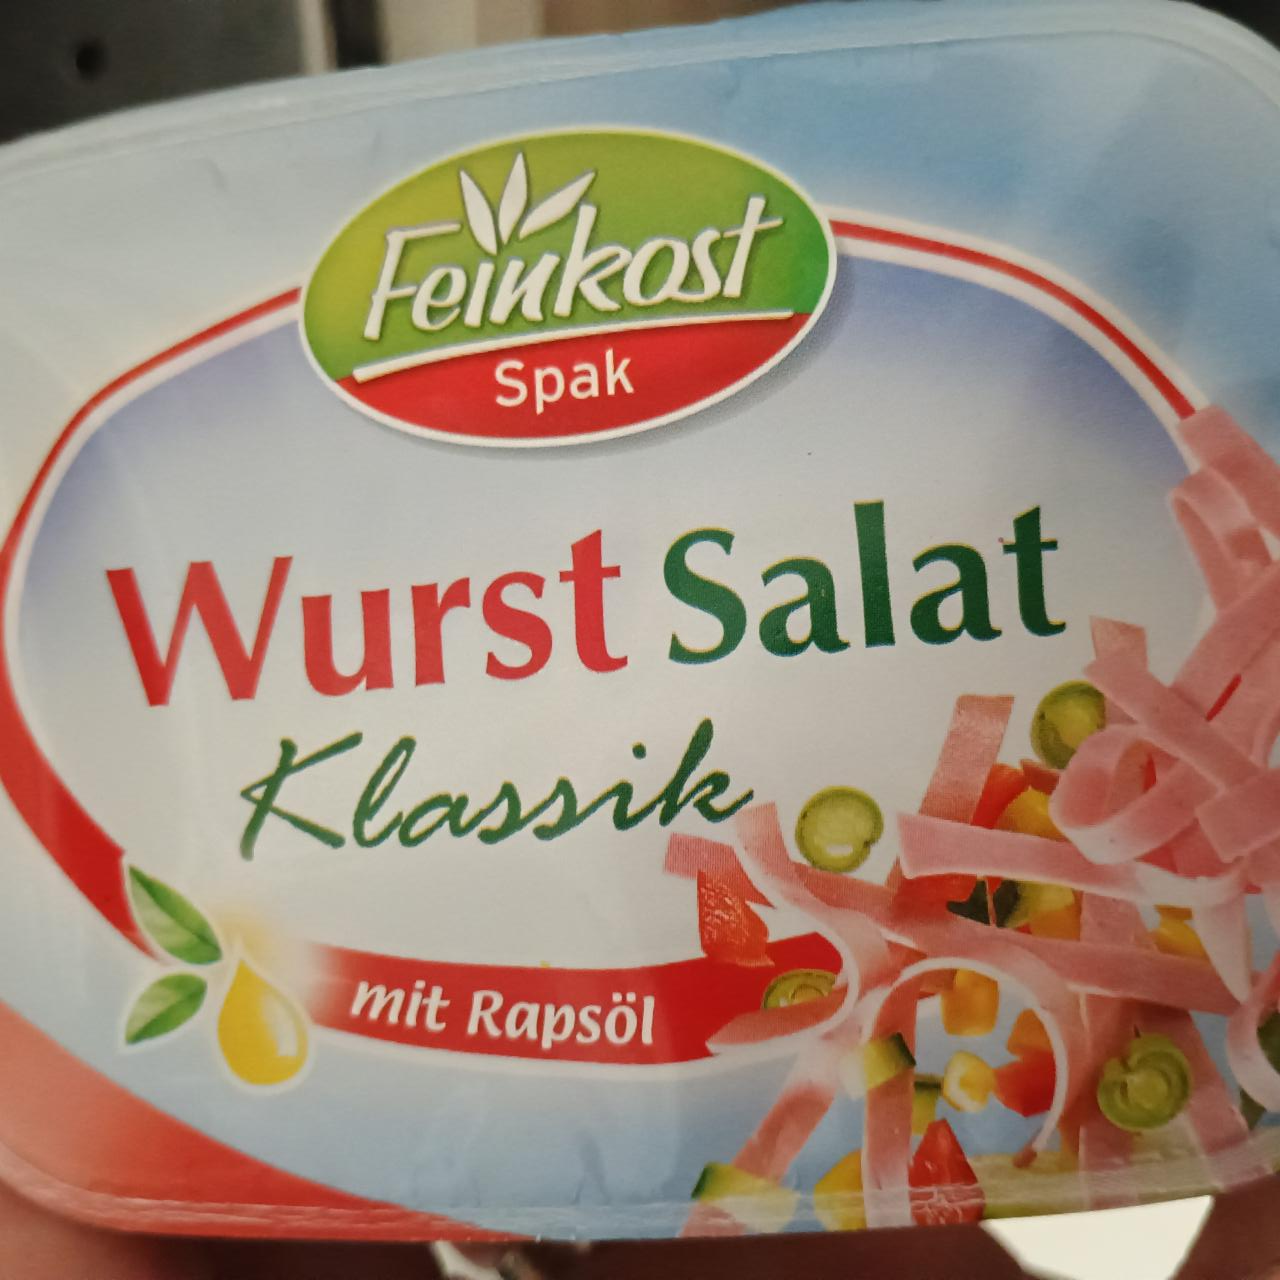 Fotografie - Wurst Salat Klassik Feinkost Spak